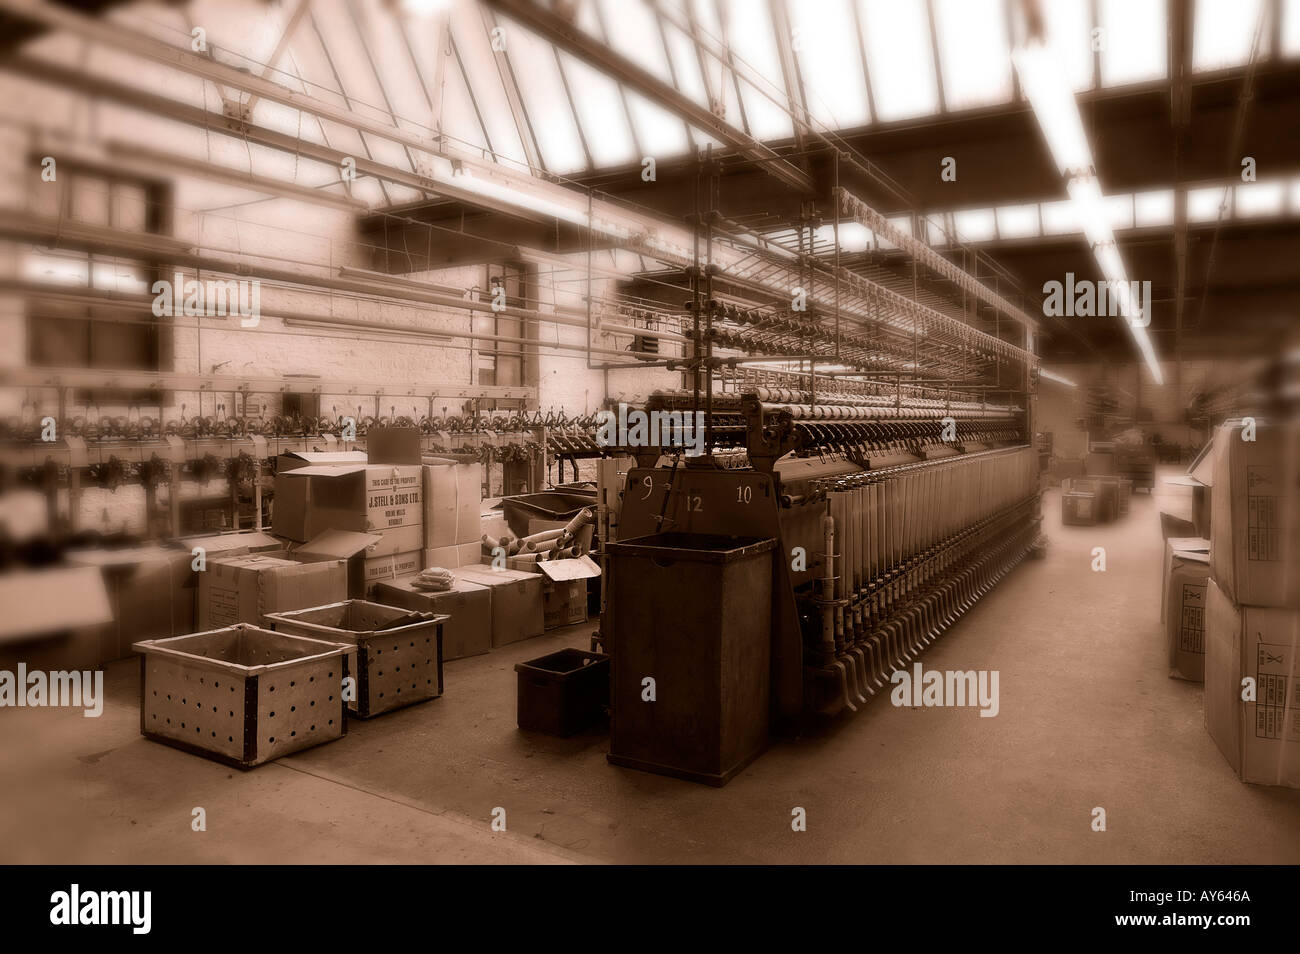 OLD VINTAGE MACHINES DANS L'usine de textile à l'abandon YORKSHIRE ANGLETERRE Banque D'Images